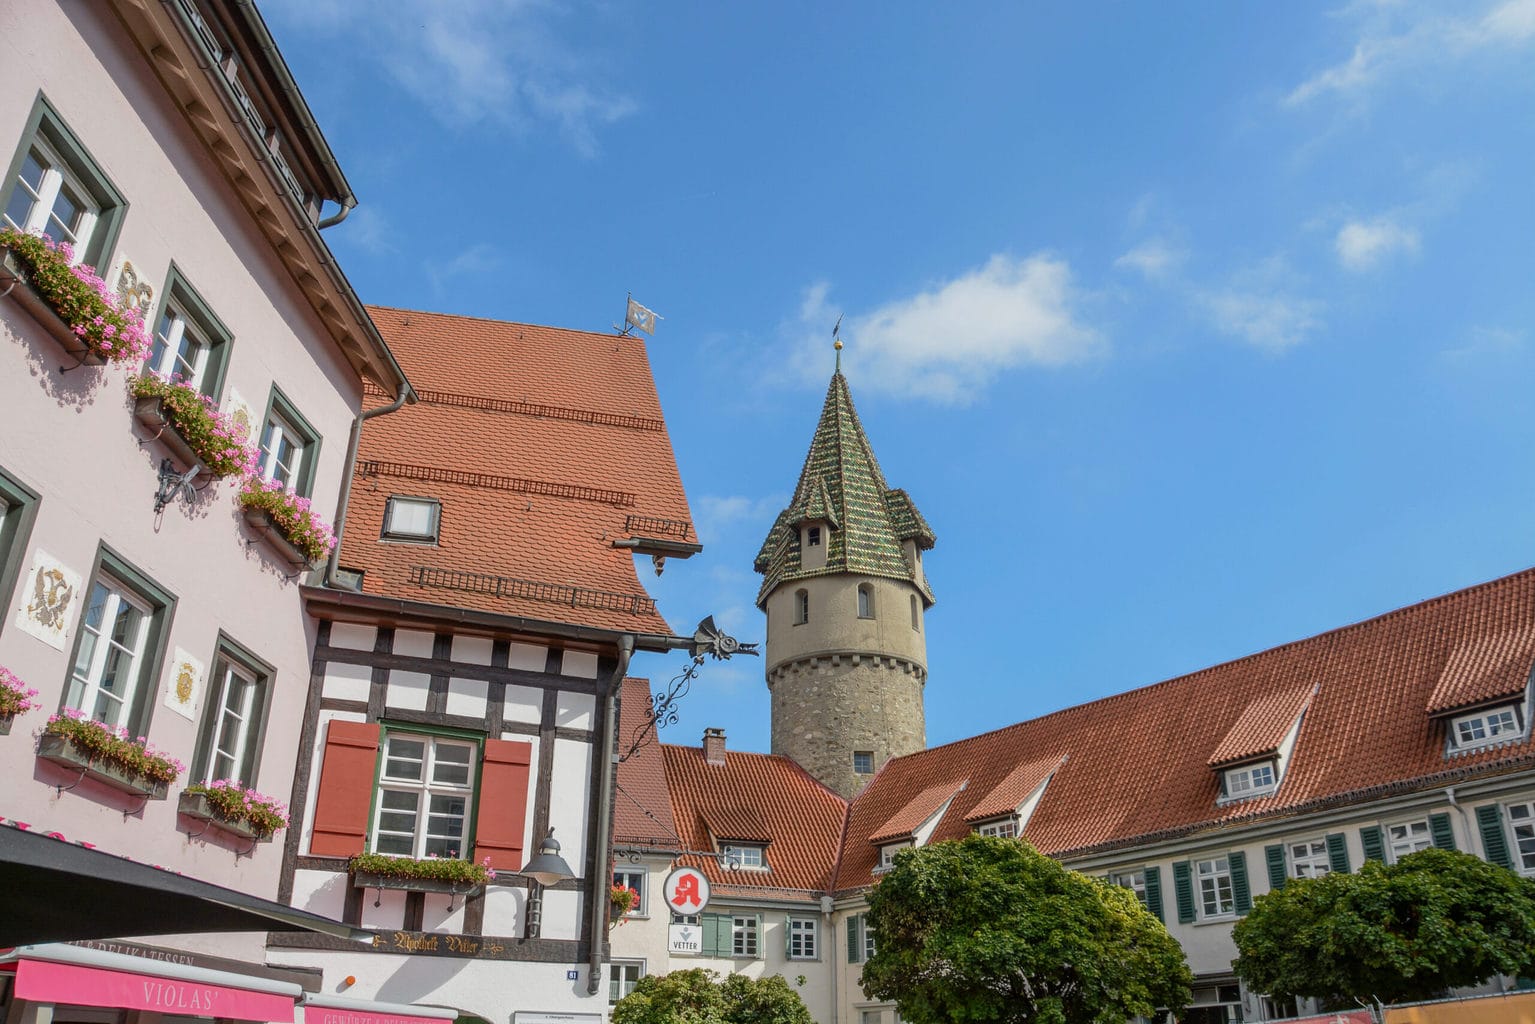 De Grüne Turm in Ravenburg wordt ondermeer geflankeerd door vakwerkhuizen